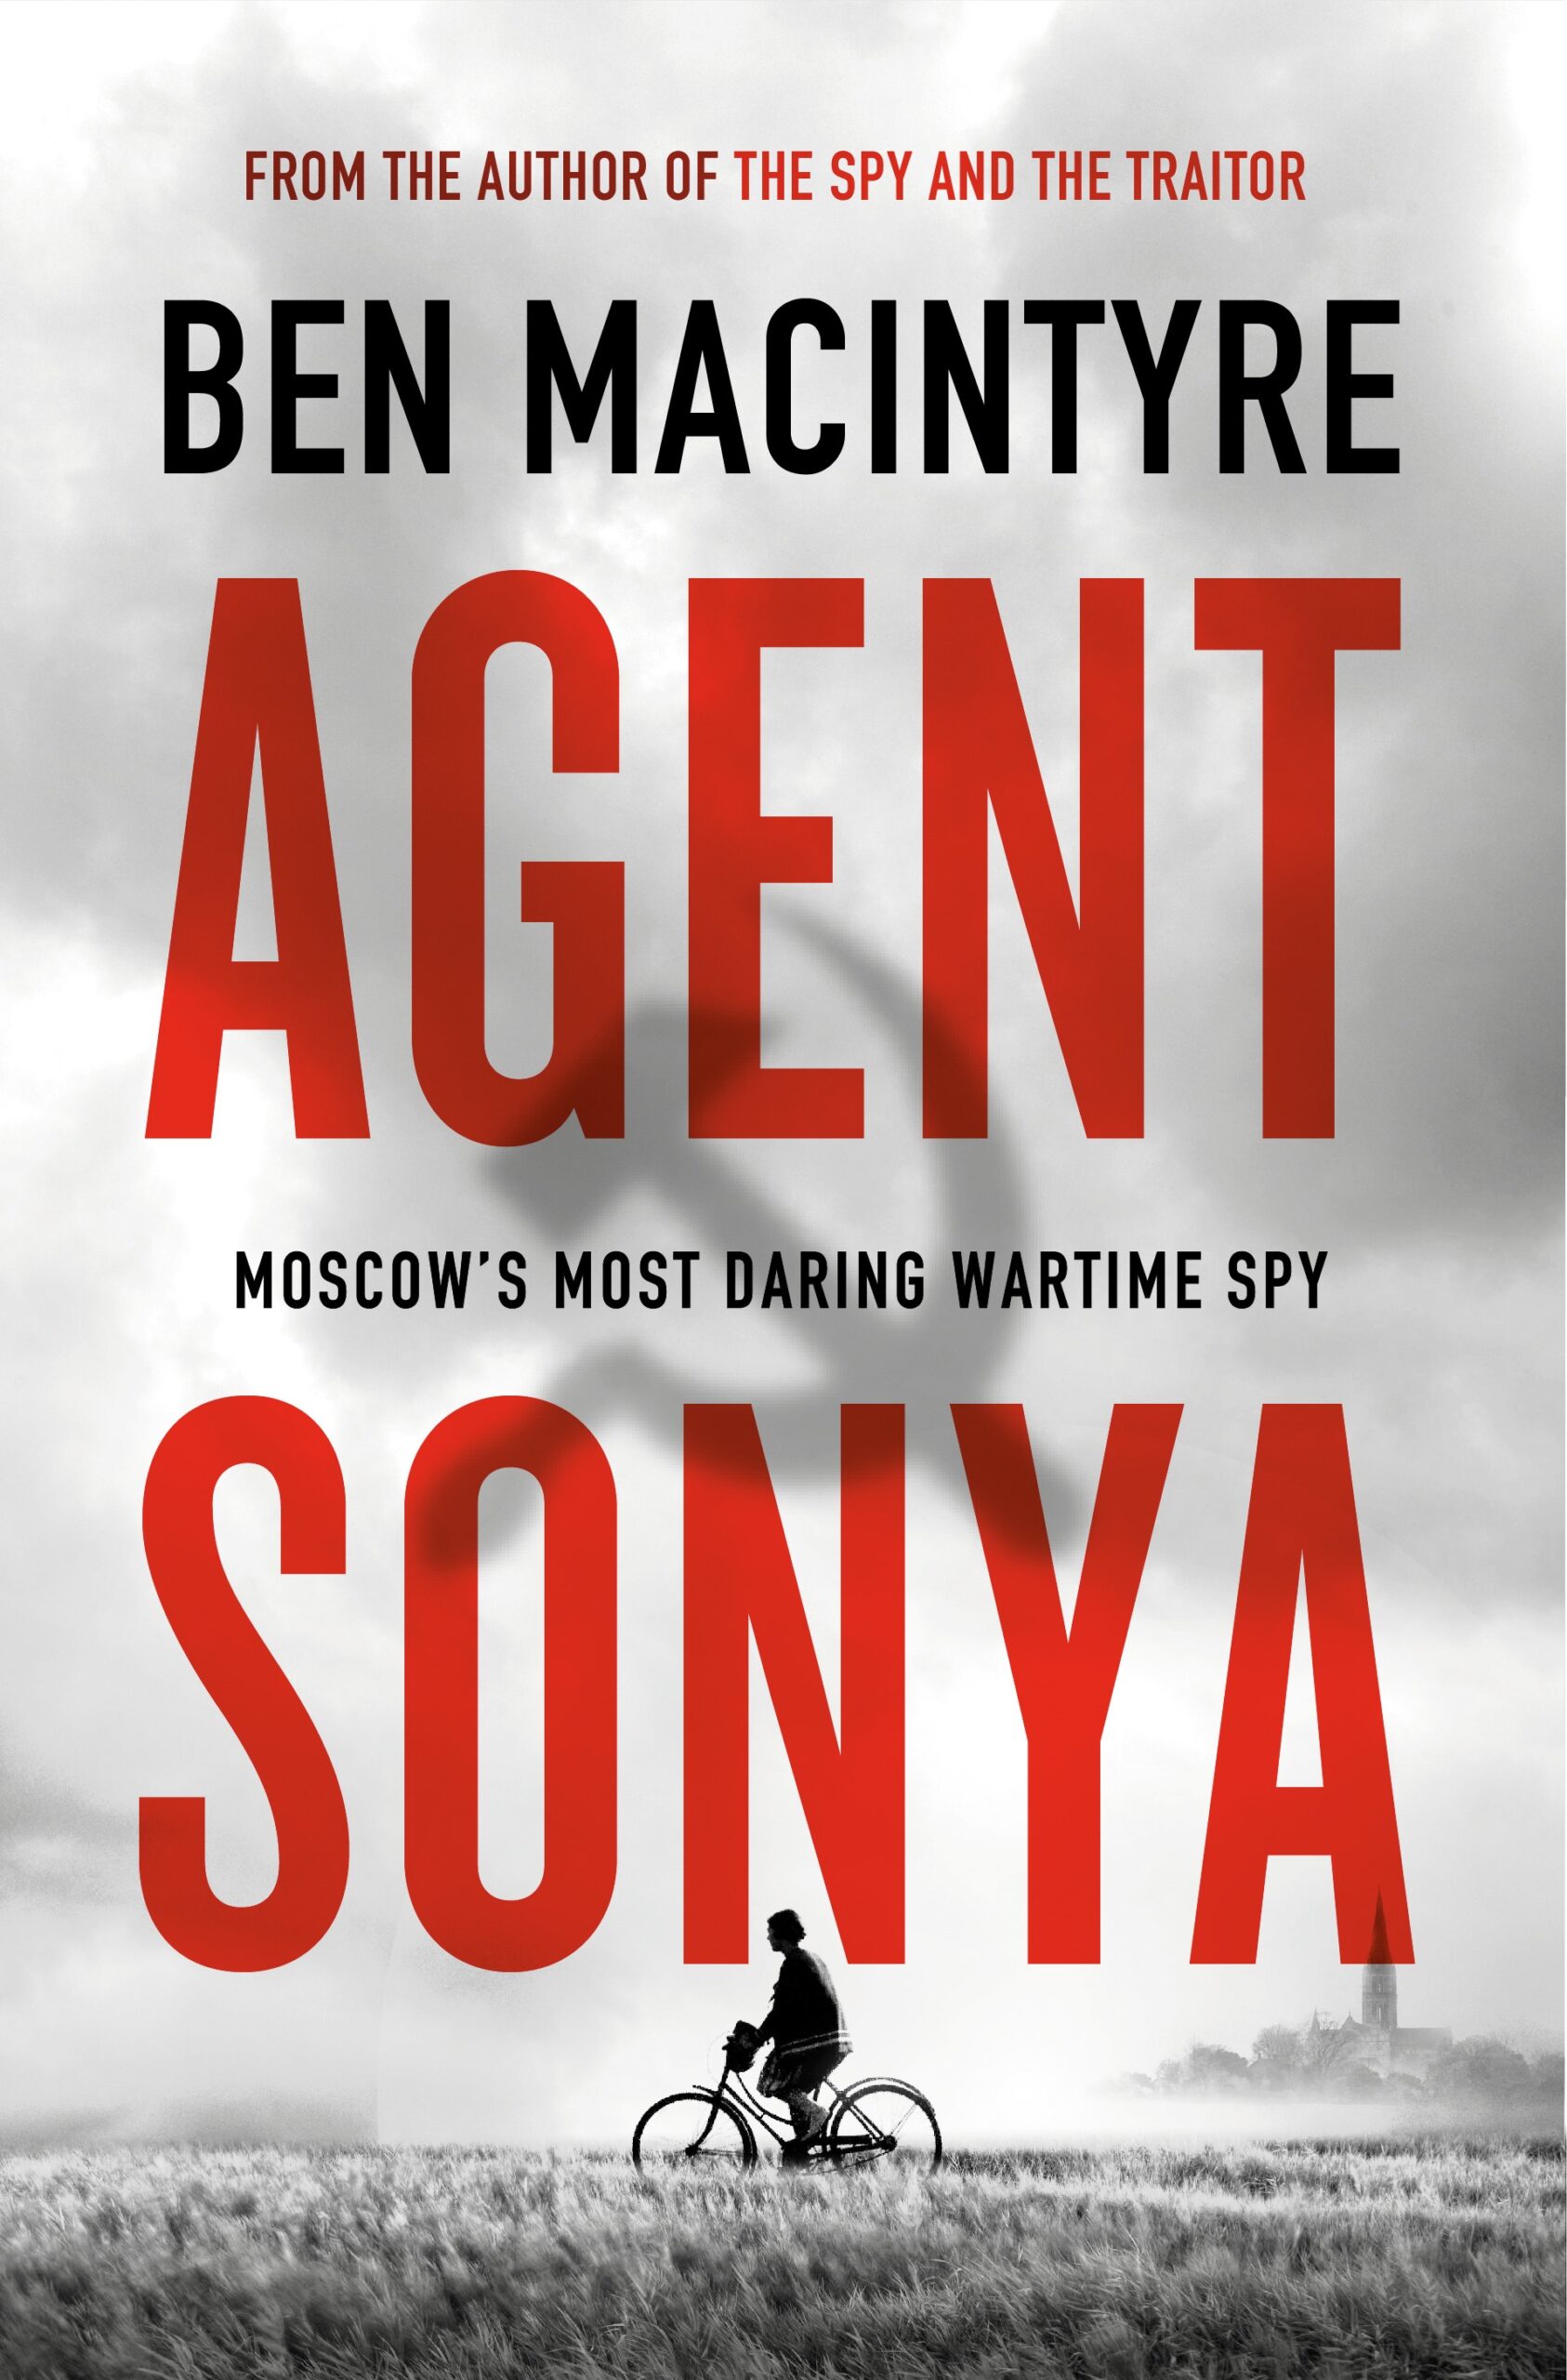 Macintyre, Ben - Agent Sonya - BookCover